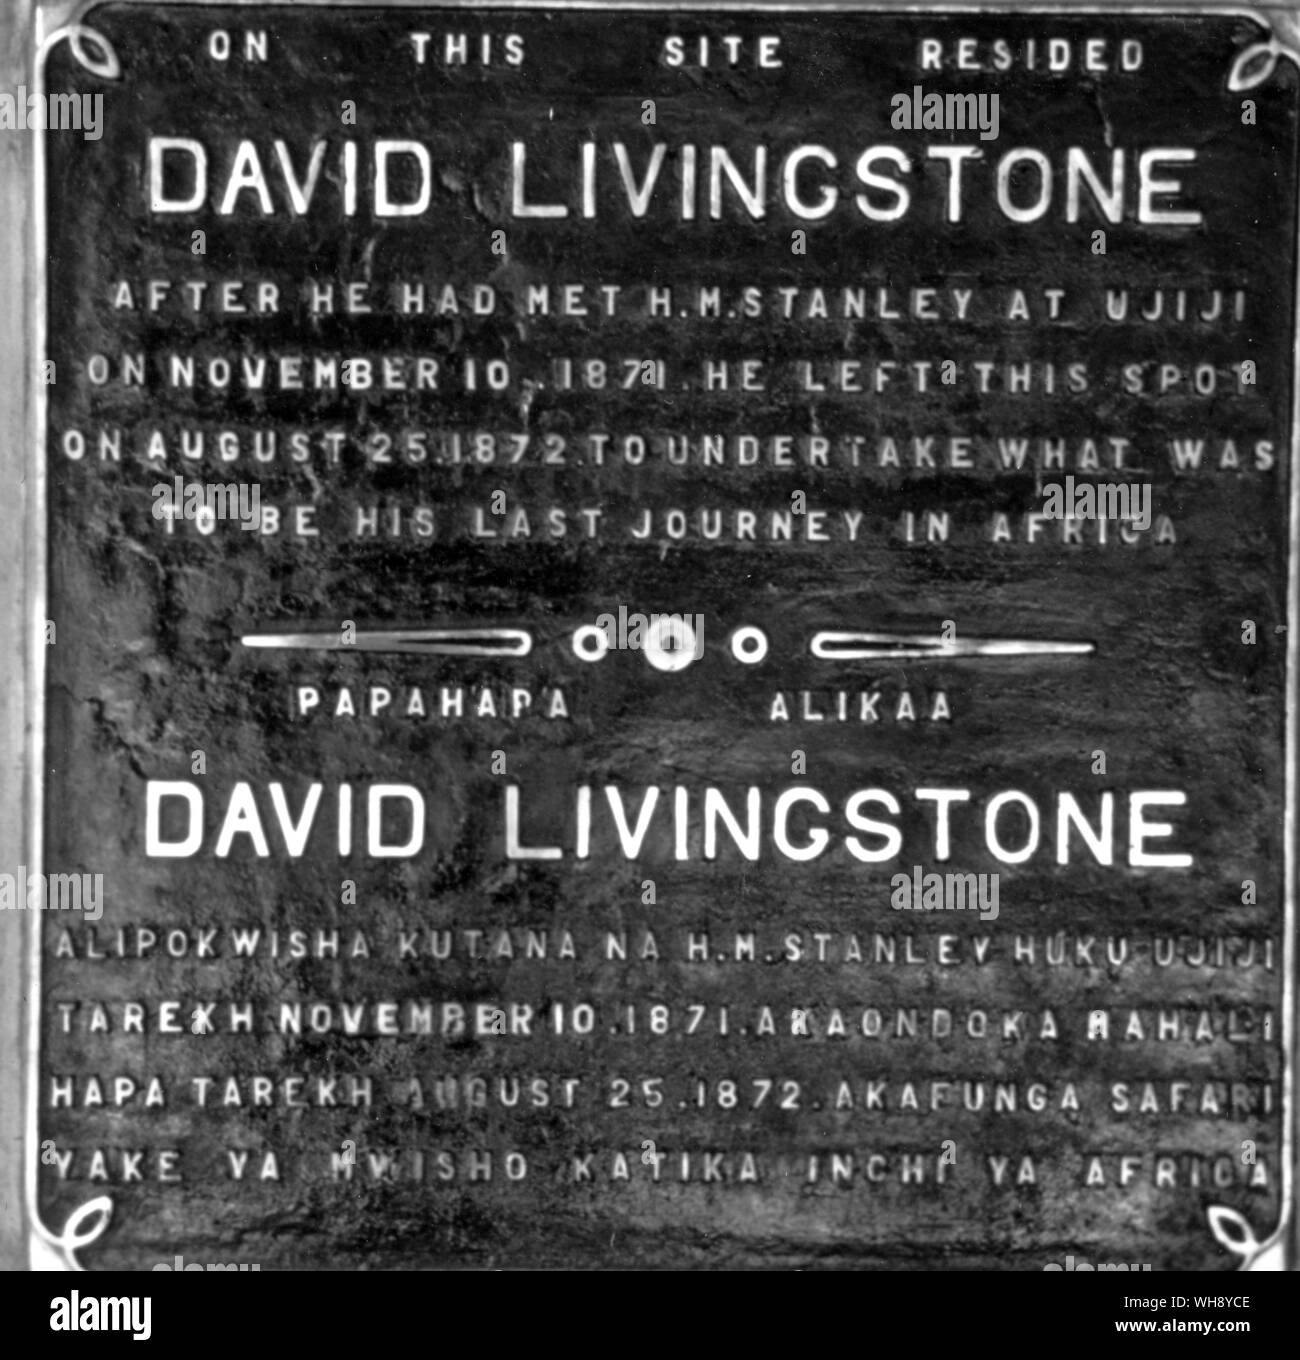 Dos placas de señalización Livingstone Stanley partiendo desde el 14 de marzo de 1872, y el sitio de la casa de Livingstone, tras su reunión con Stanley hasta el 25 de agosto de 1872, fecha en la cual partió sobre cuál iba a ser su último viaje. Foto de stock